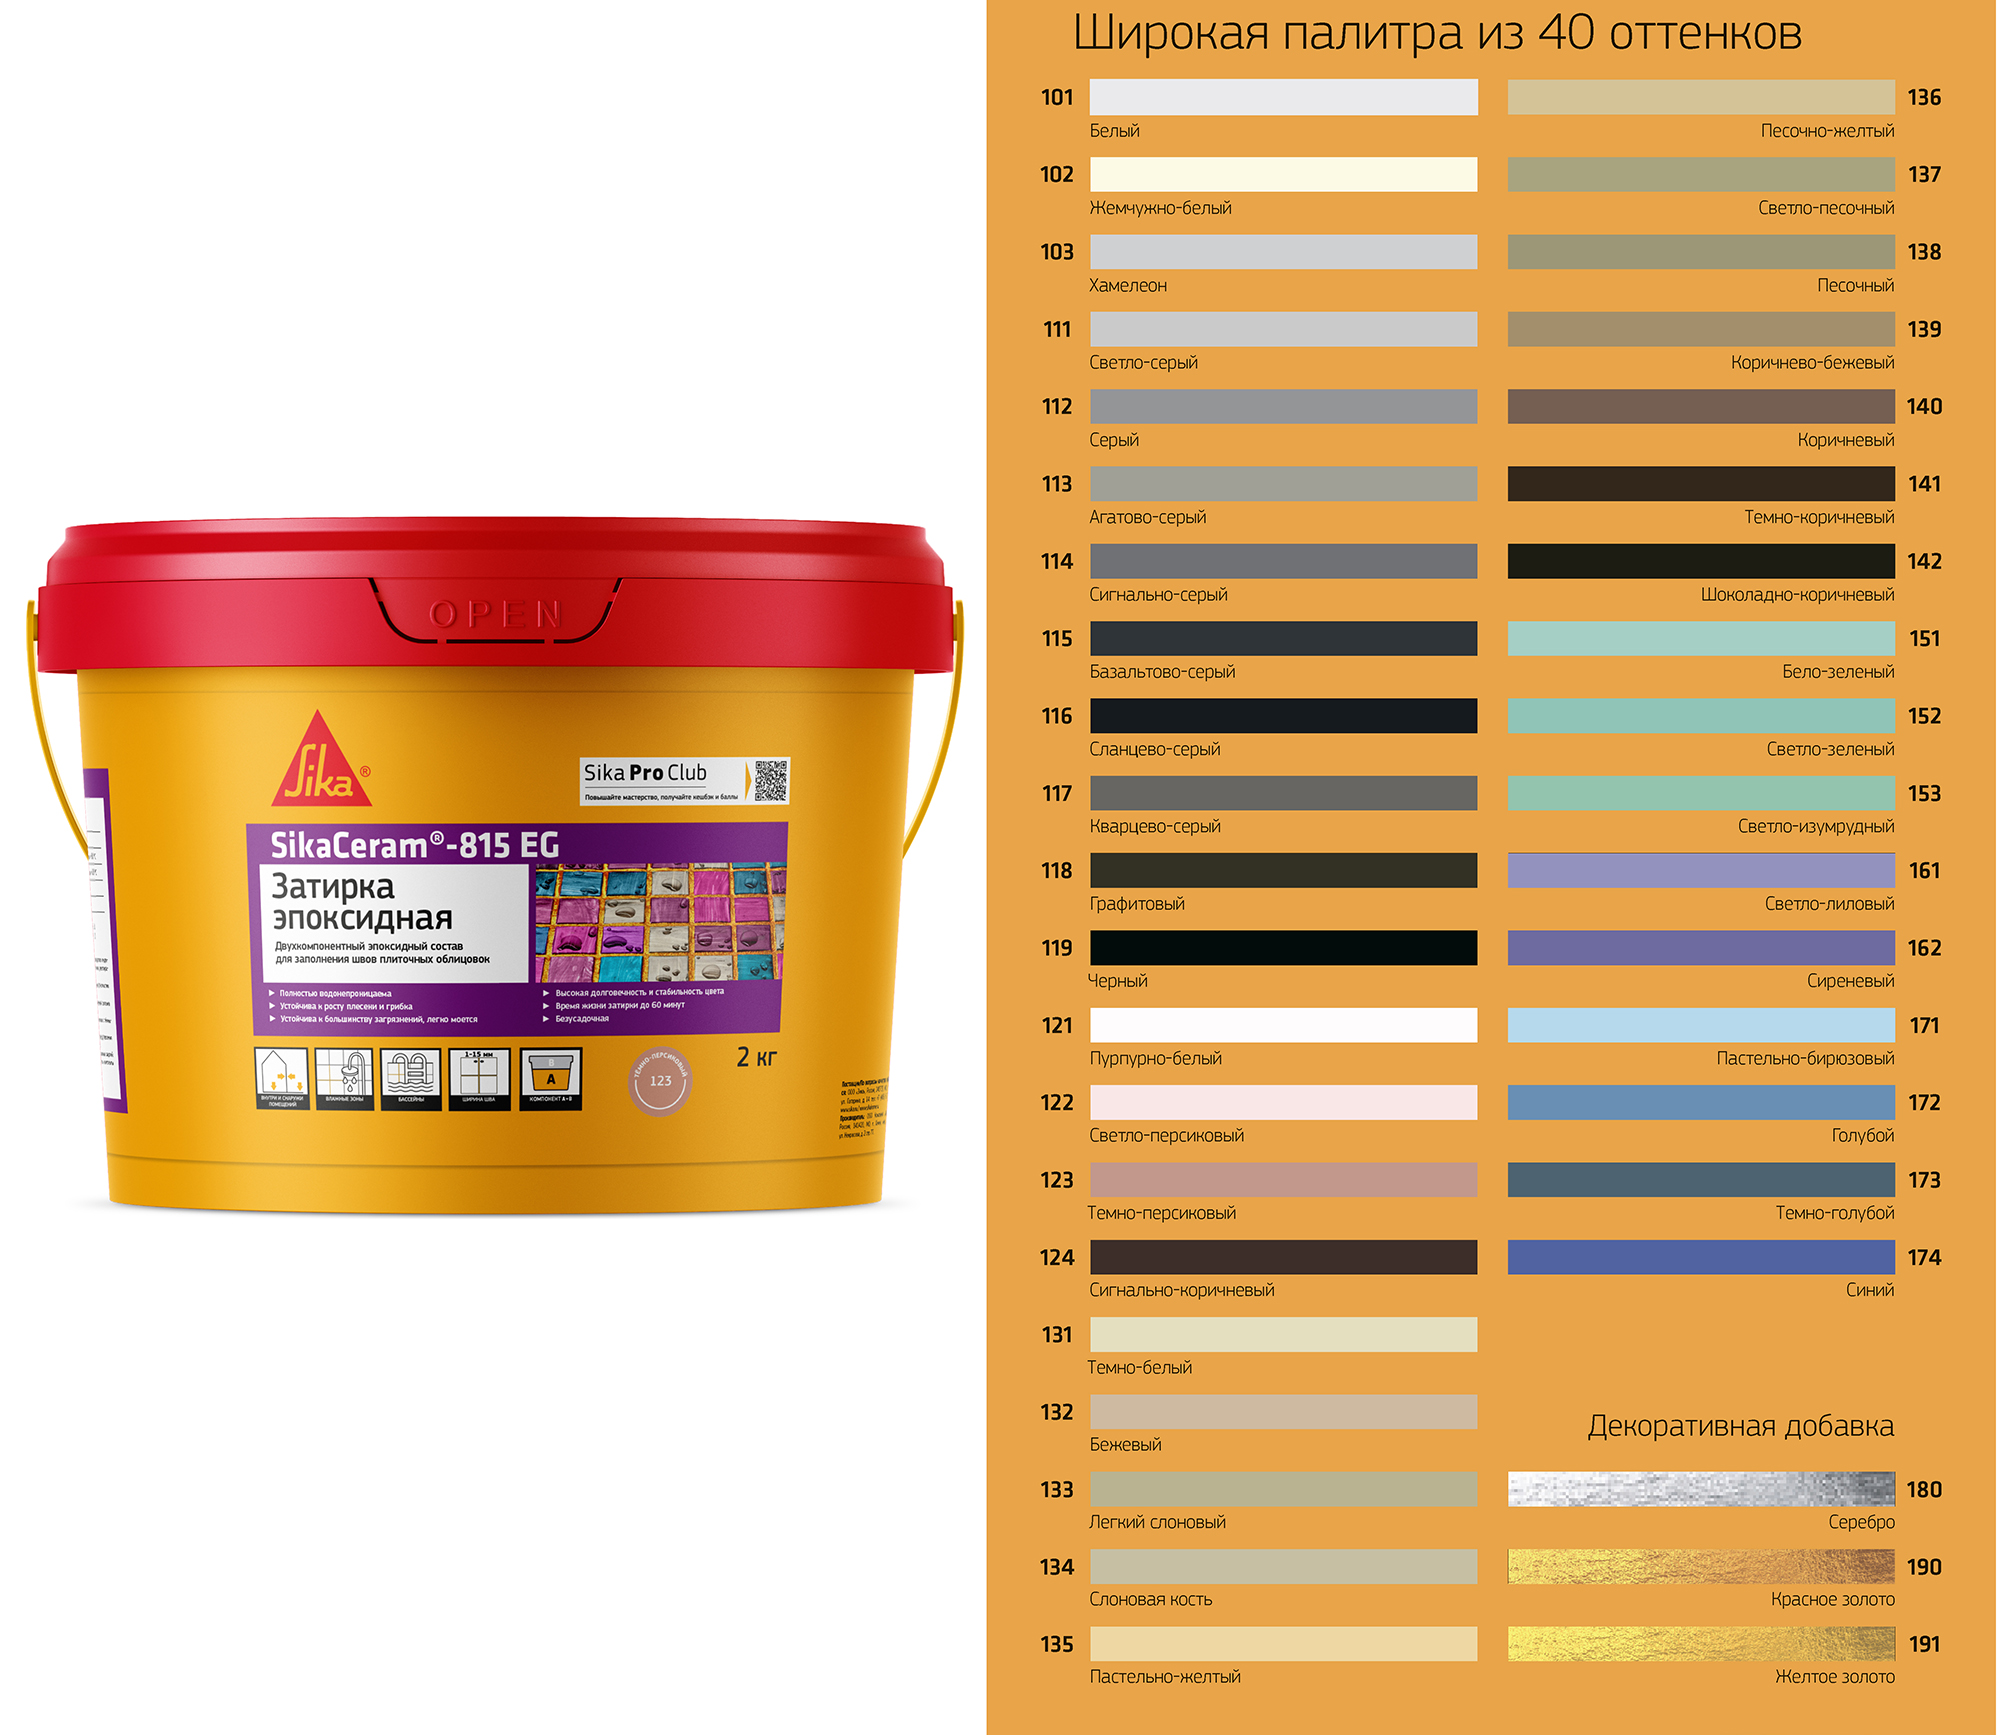 Затирка для плитки SikaCeram - 815 EG двухкомпонентная эпоксидная, цвет графит (118)